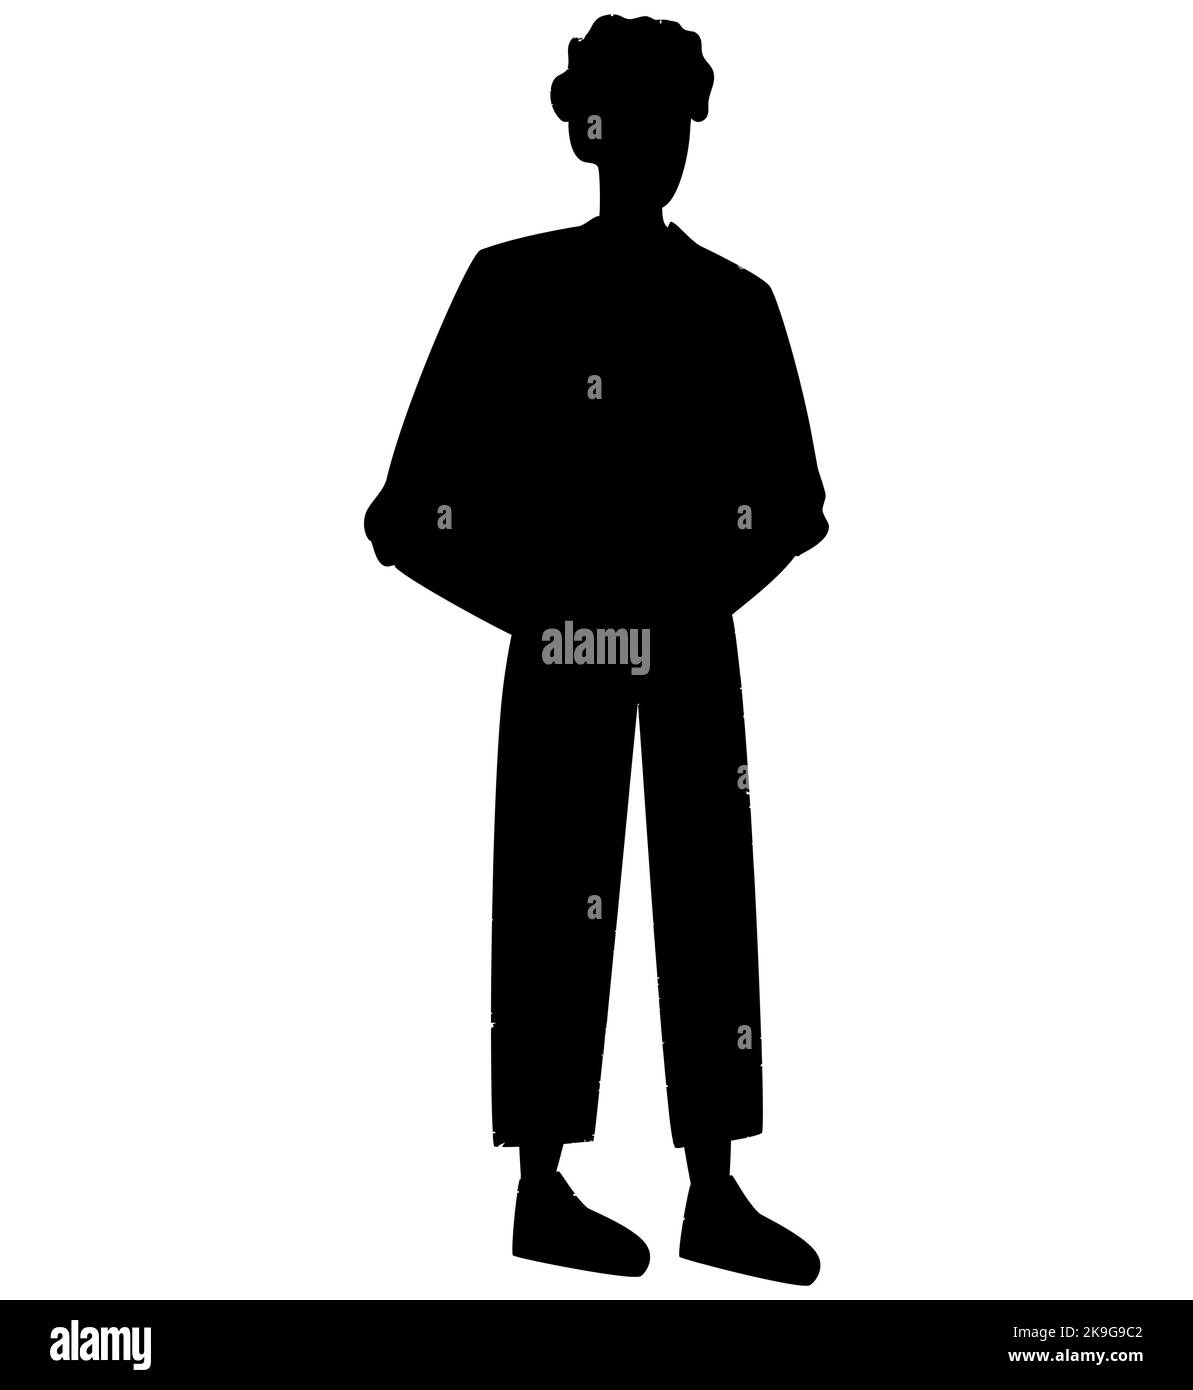 Vektor Silhouette eines Mannes stehend, Hände in Taschen Geschäftsleute, schwarze Farbe, isoliert auf weißem Hintergrund Stock Vektor